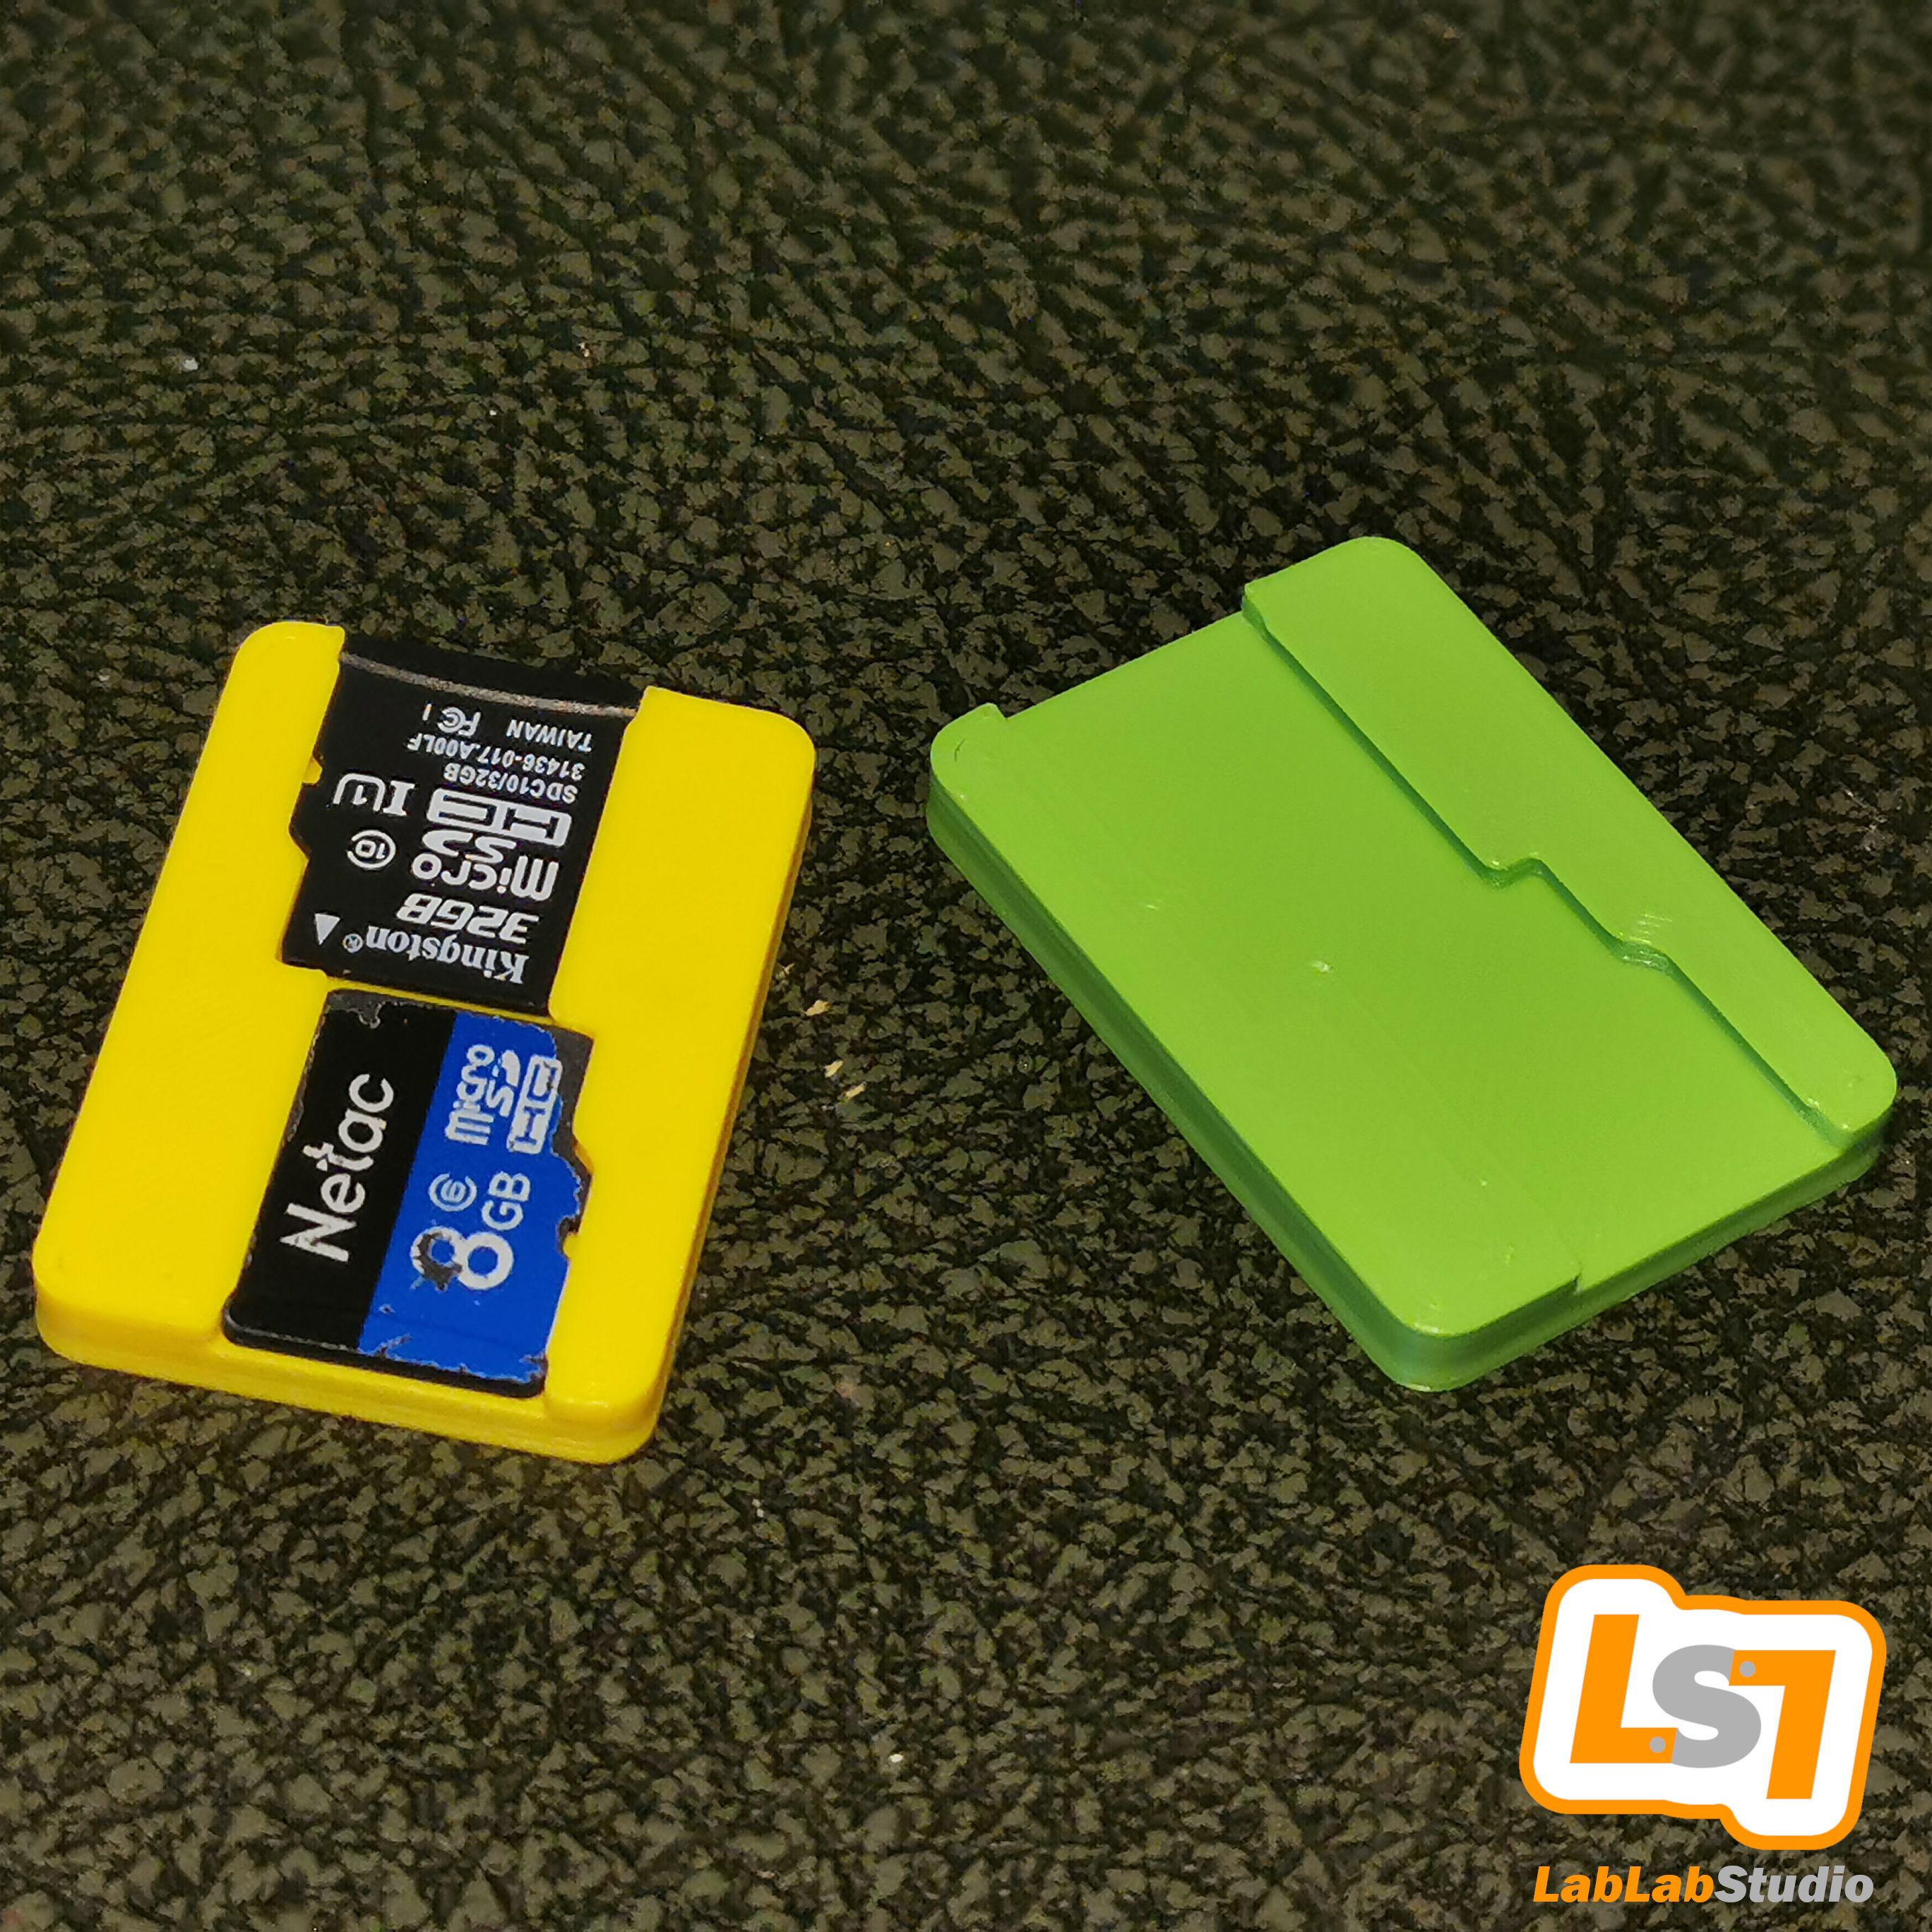 9_C.jpg Файл 3D Куб для хранения 12 в 1 для игровых картриджей и карт MicroSD для Nintendo Switch・Дизайн 3D принтера для загрузки, LabLabStudio